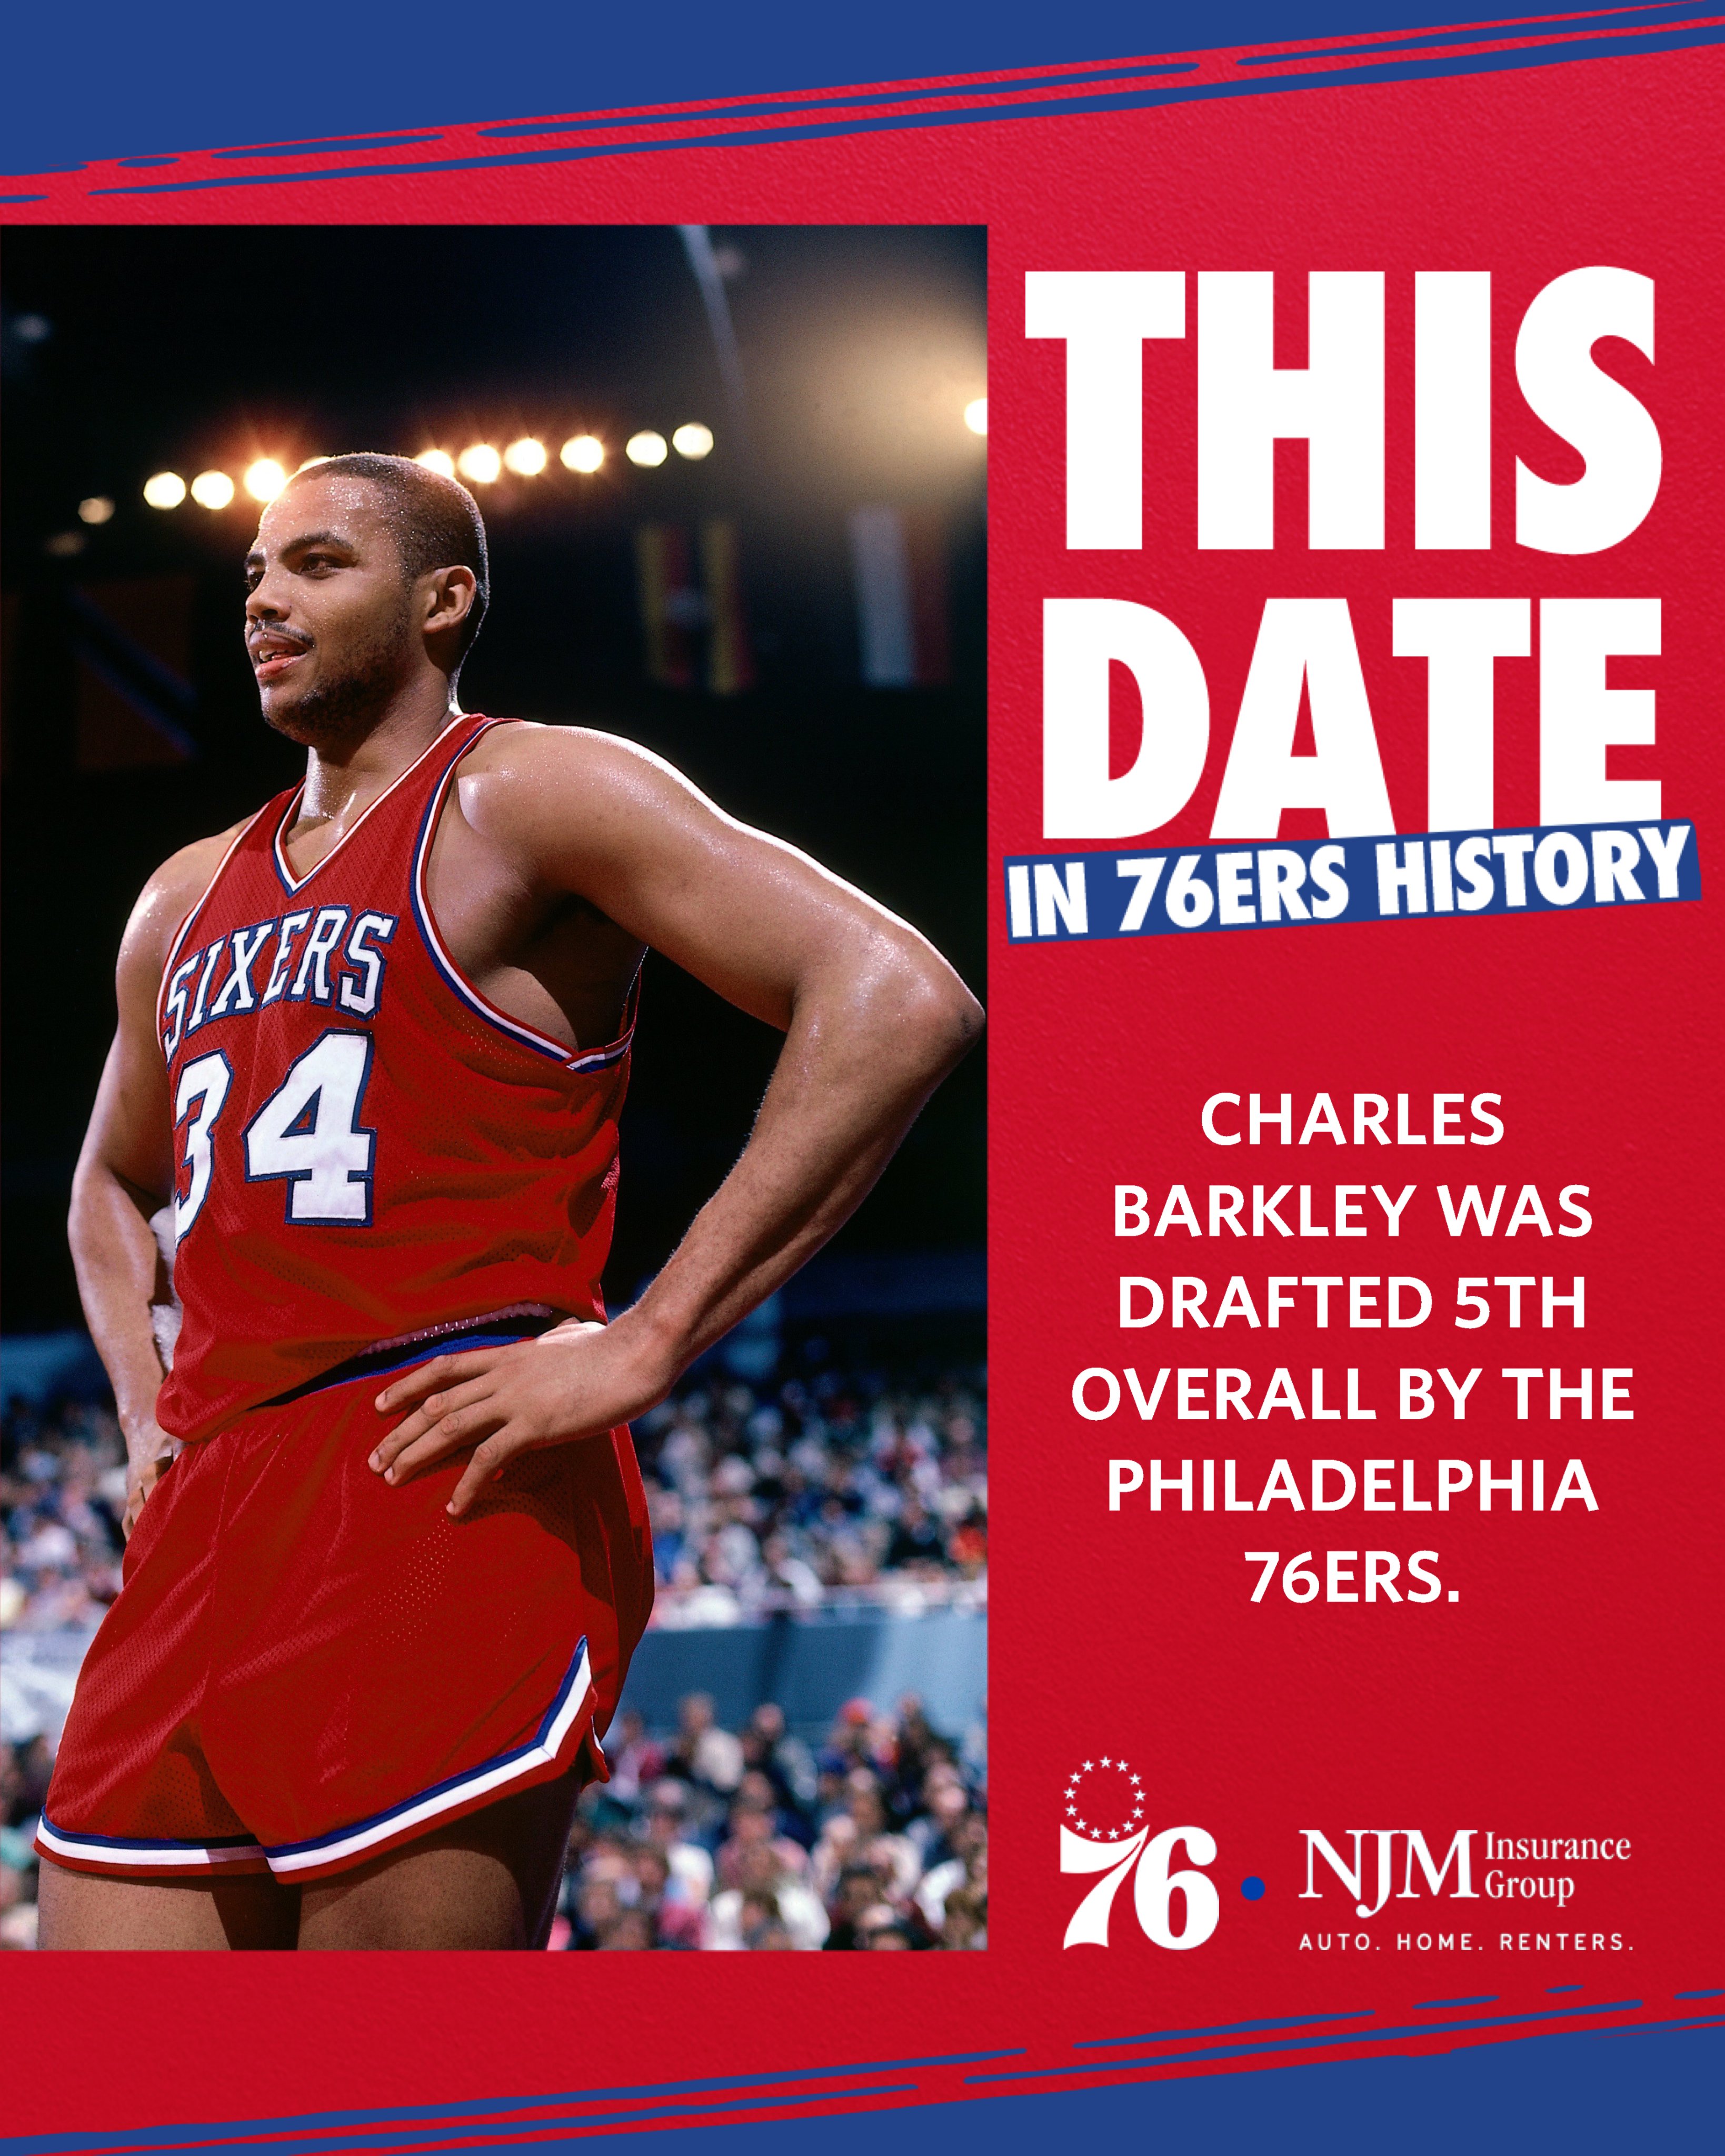 Sixers NBA Draft History, Philadelphia 76ers